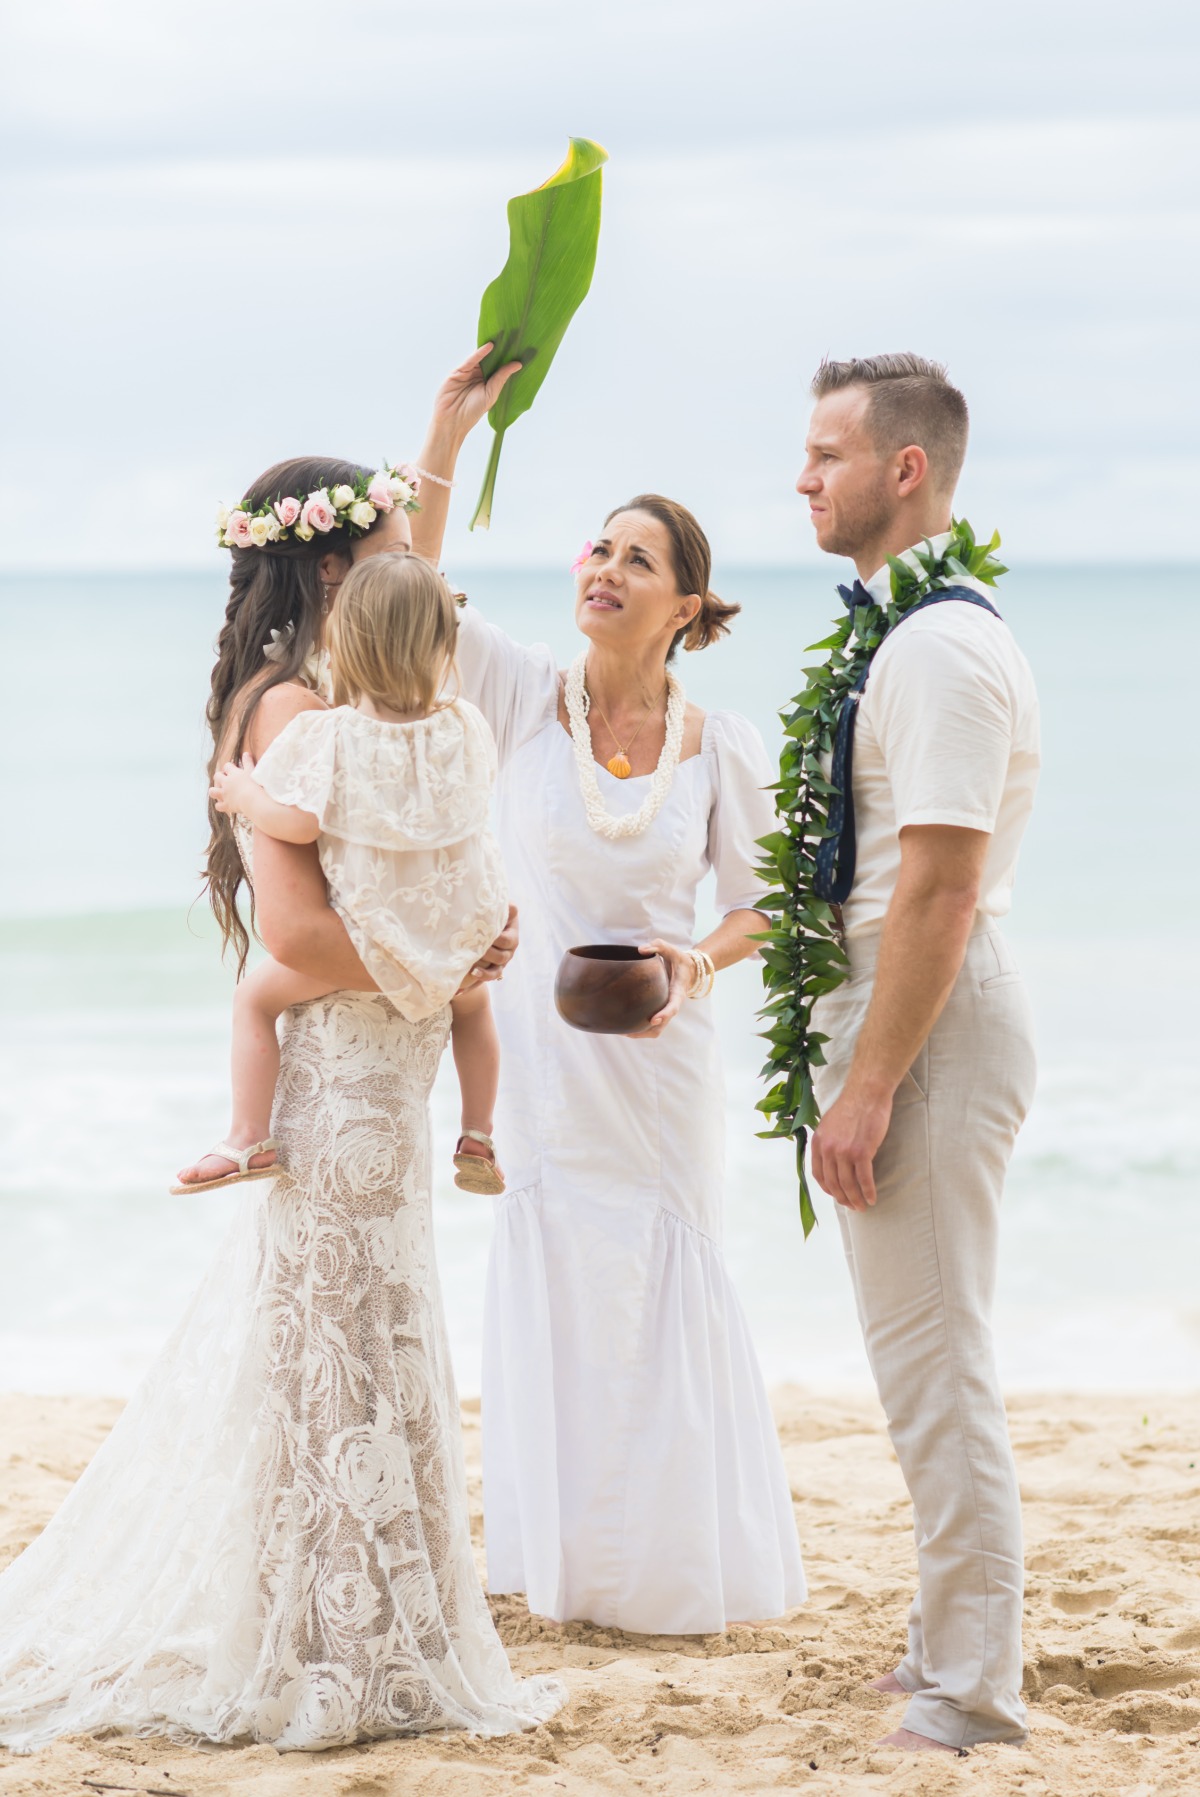 Hawaiian ceremony blessing